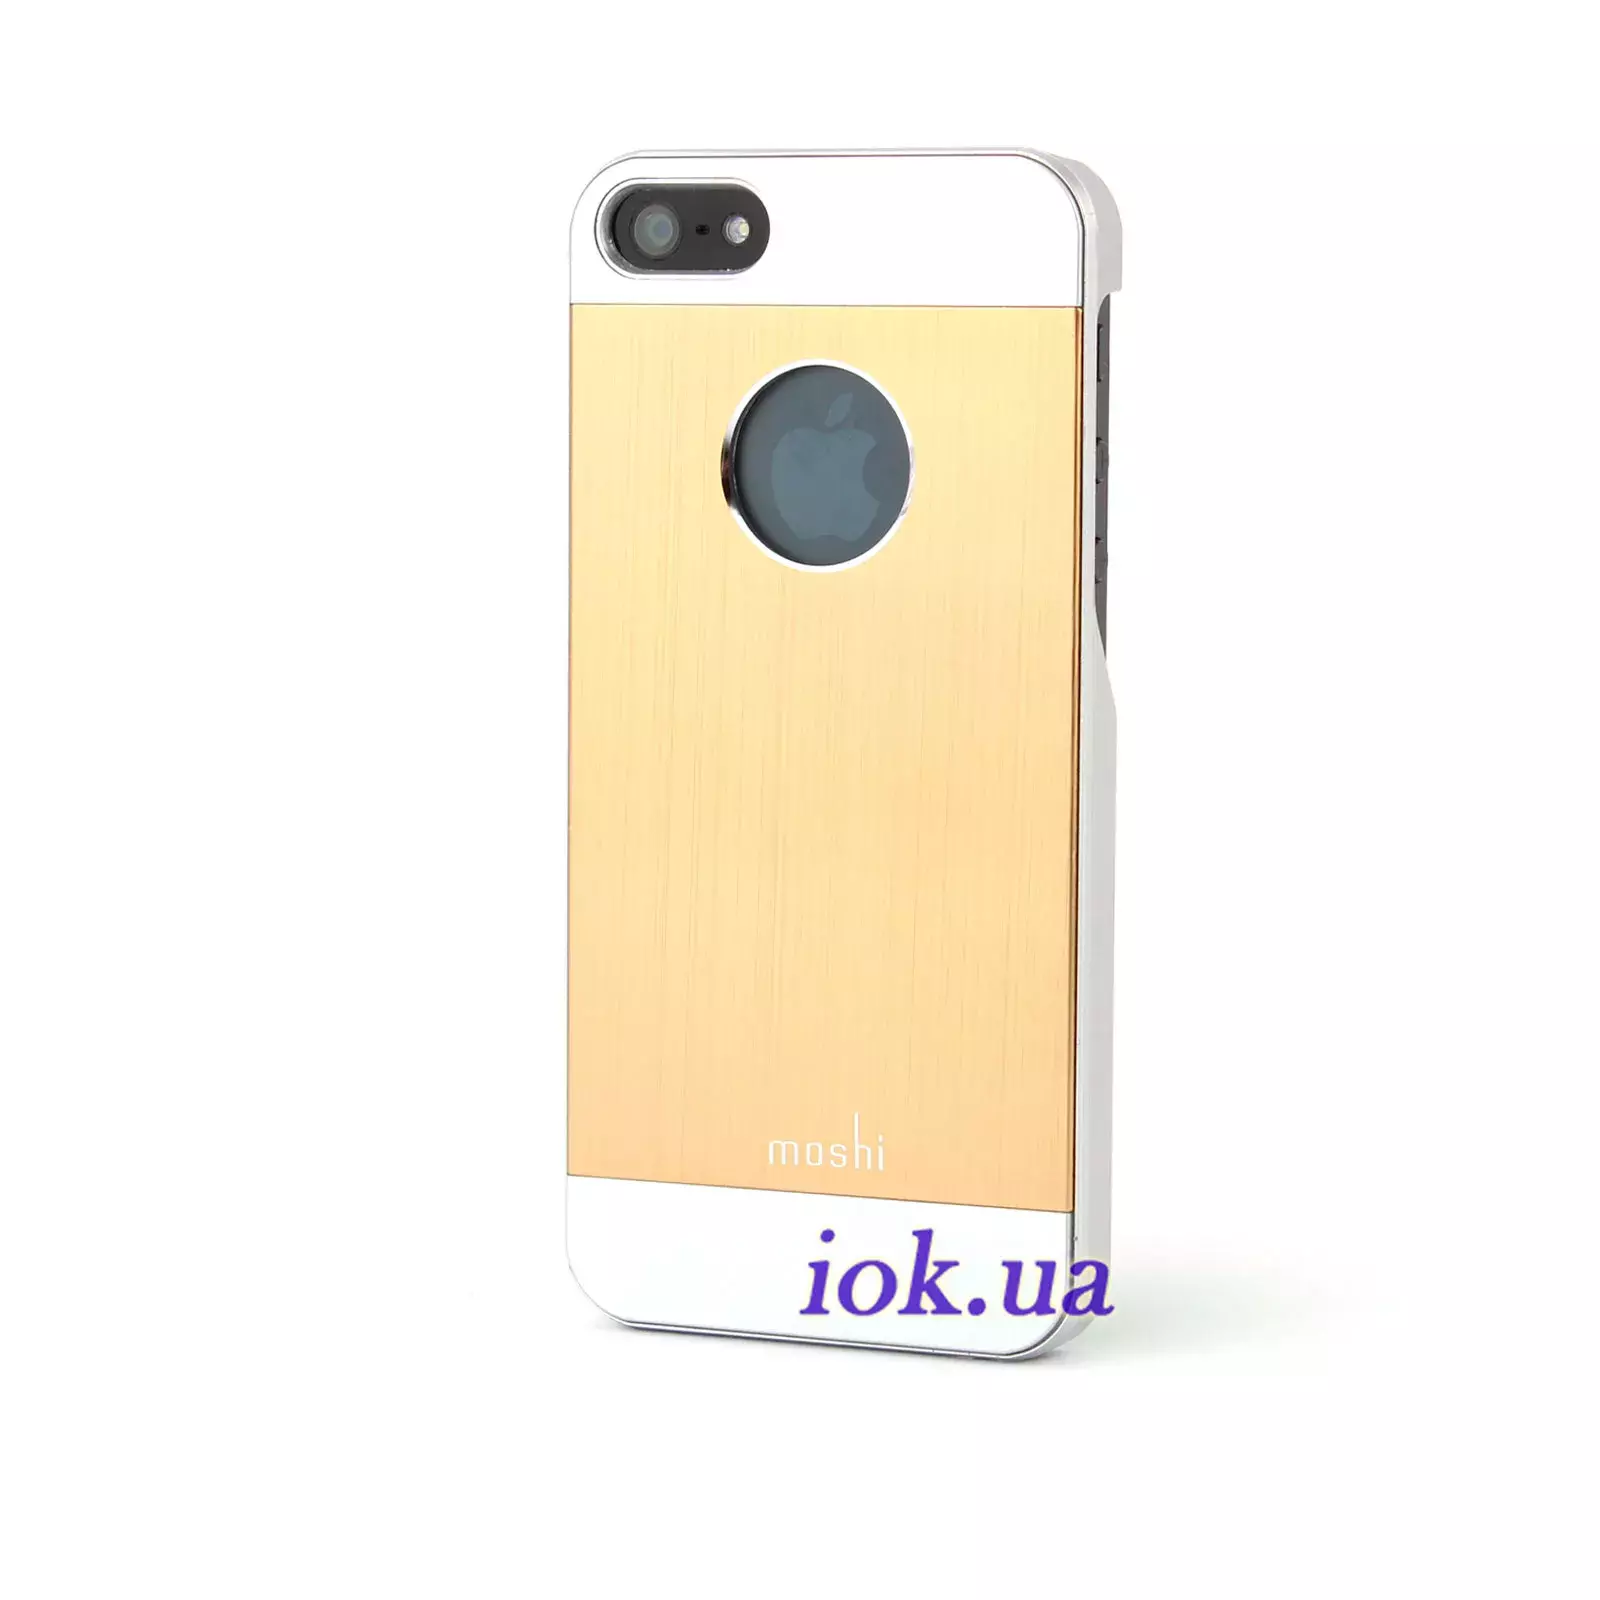 Золотой чехол с металлической вставкой для iPhone 5/5S - Moschi iGlaze